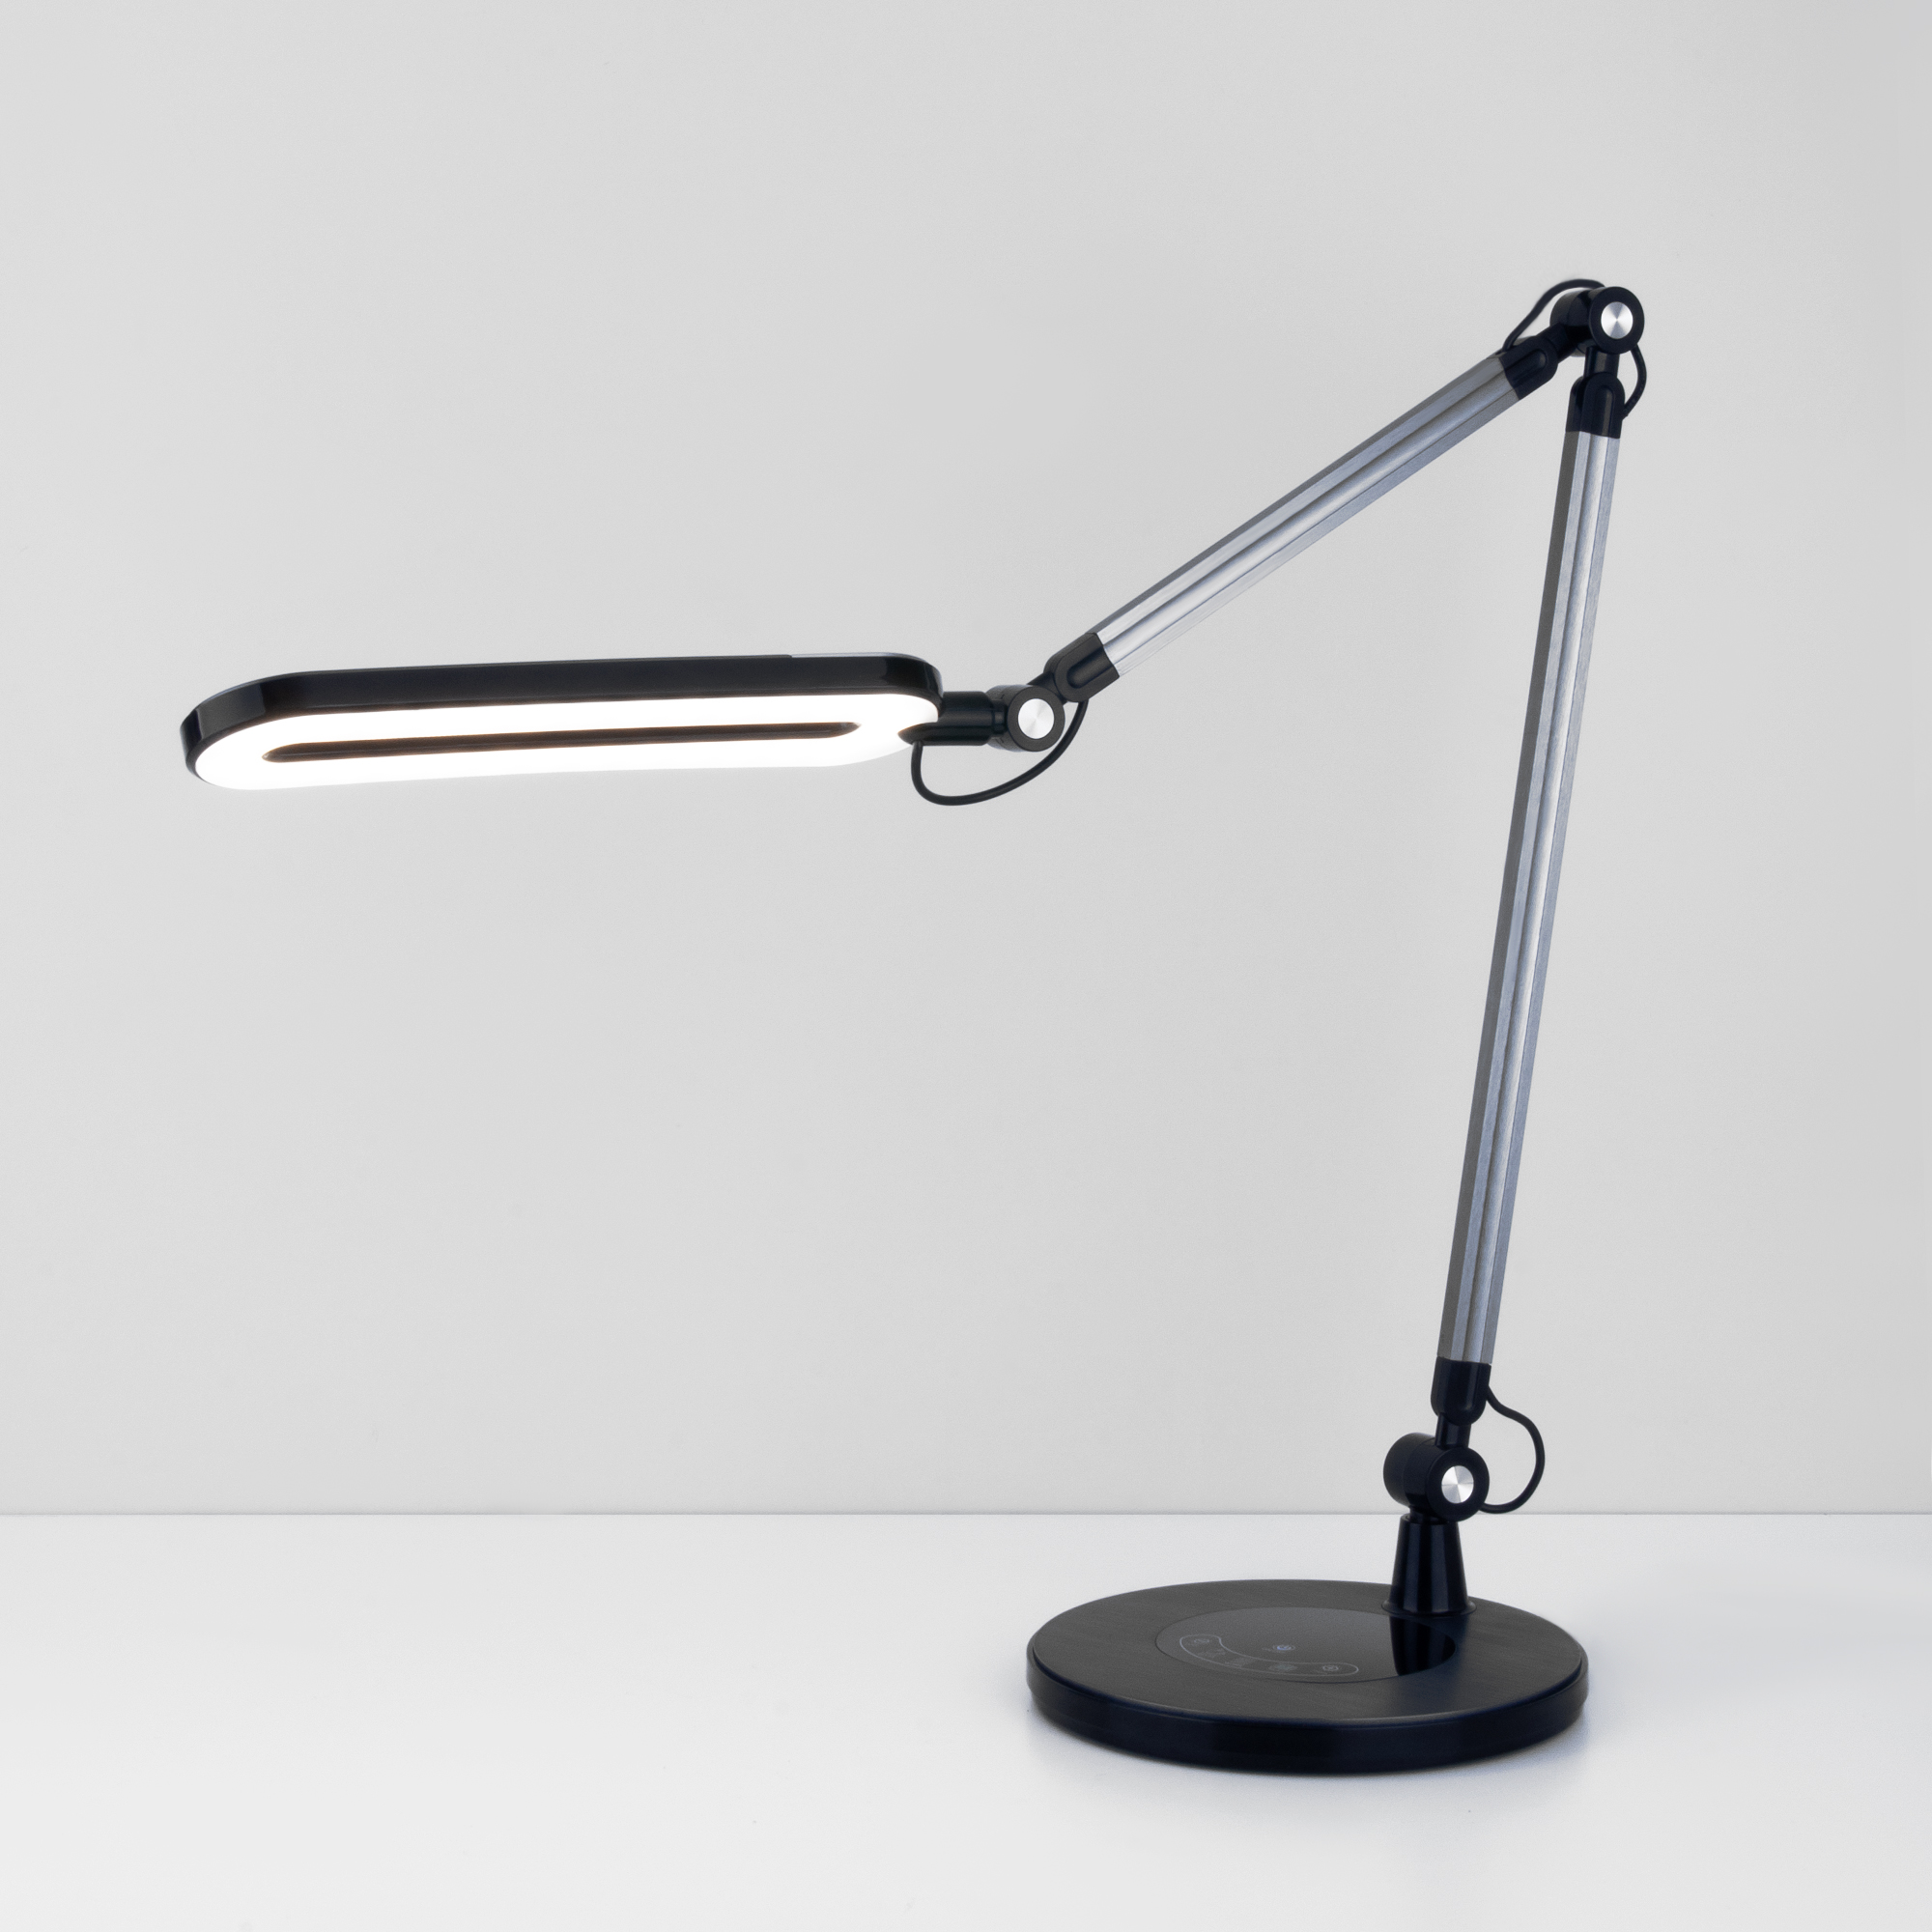 L’art de l’éclairage : voici la lampe de table « graphite » pour votre intérieur exquis !